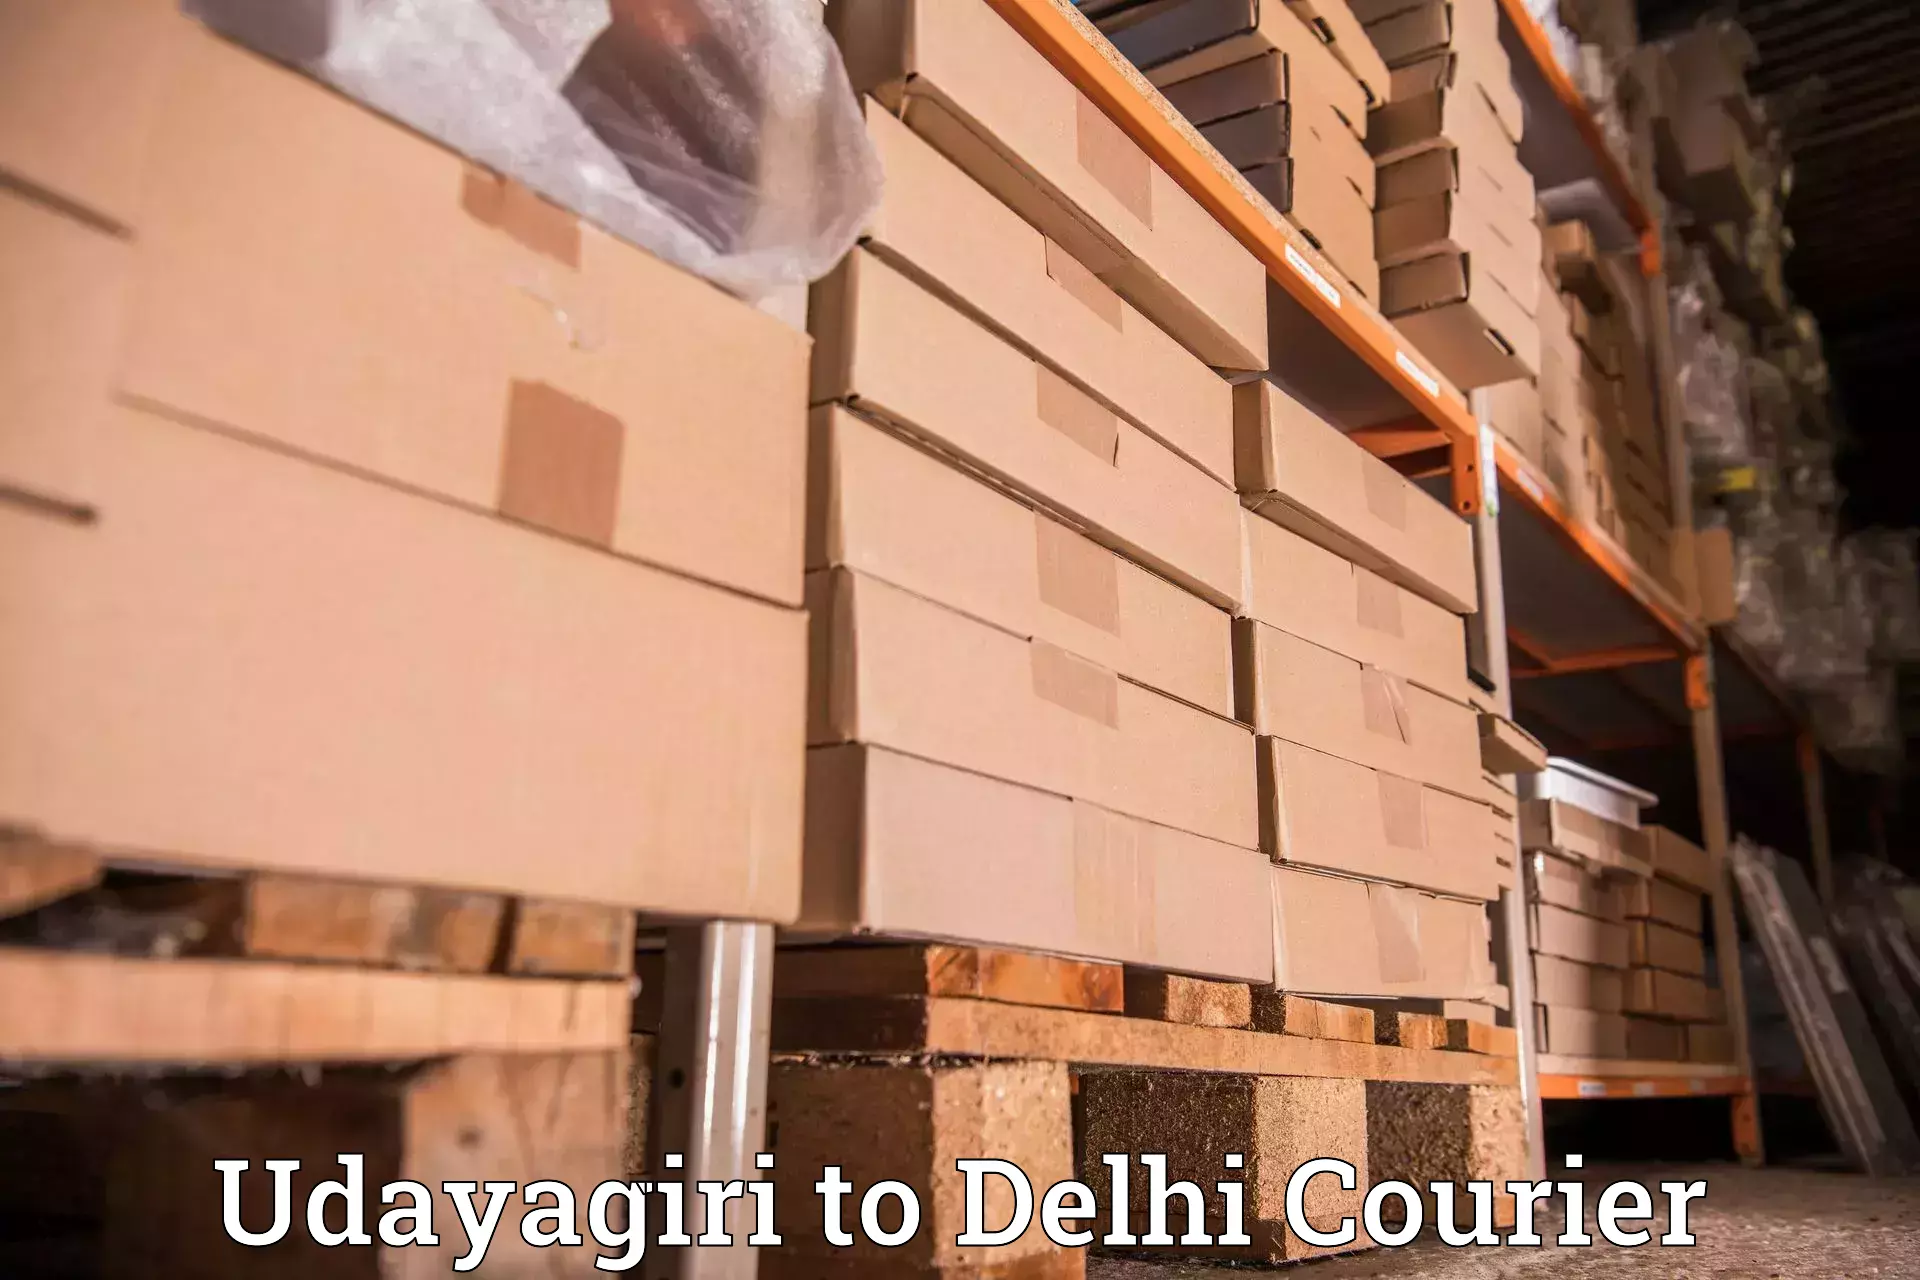 Flexible delivery scheduling Udayagiri to Ashok Vihar